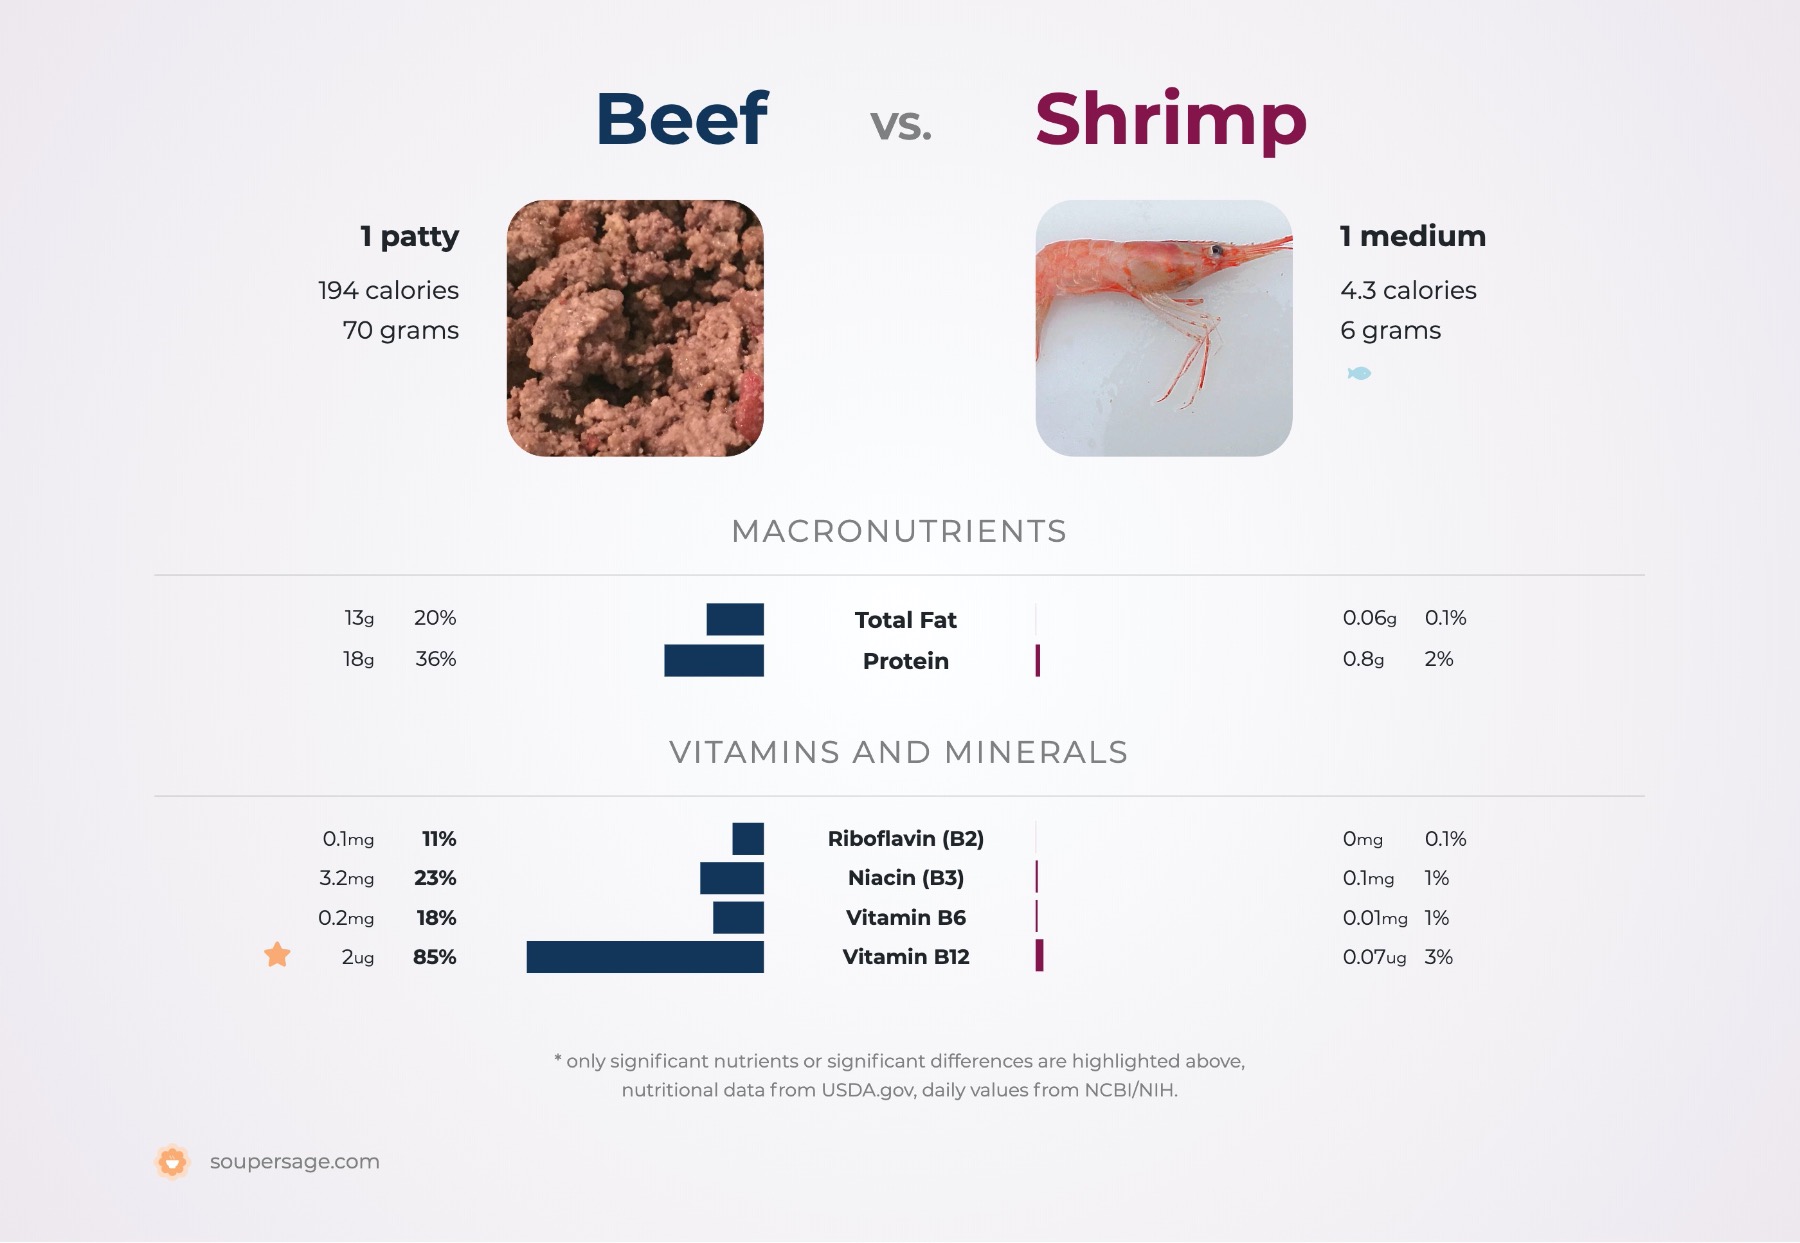 nutrition comparison of beef vs. shrimp